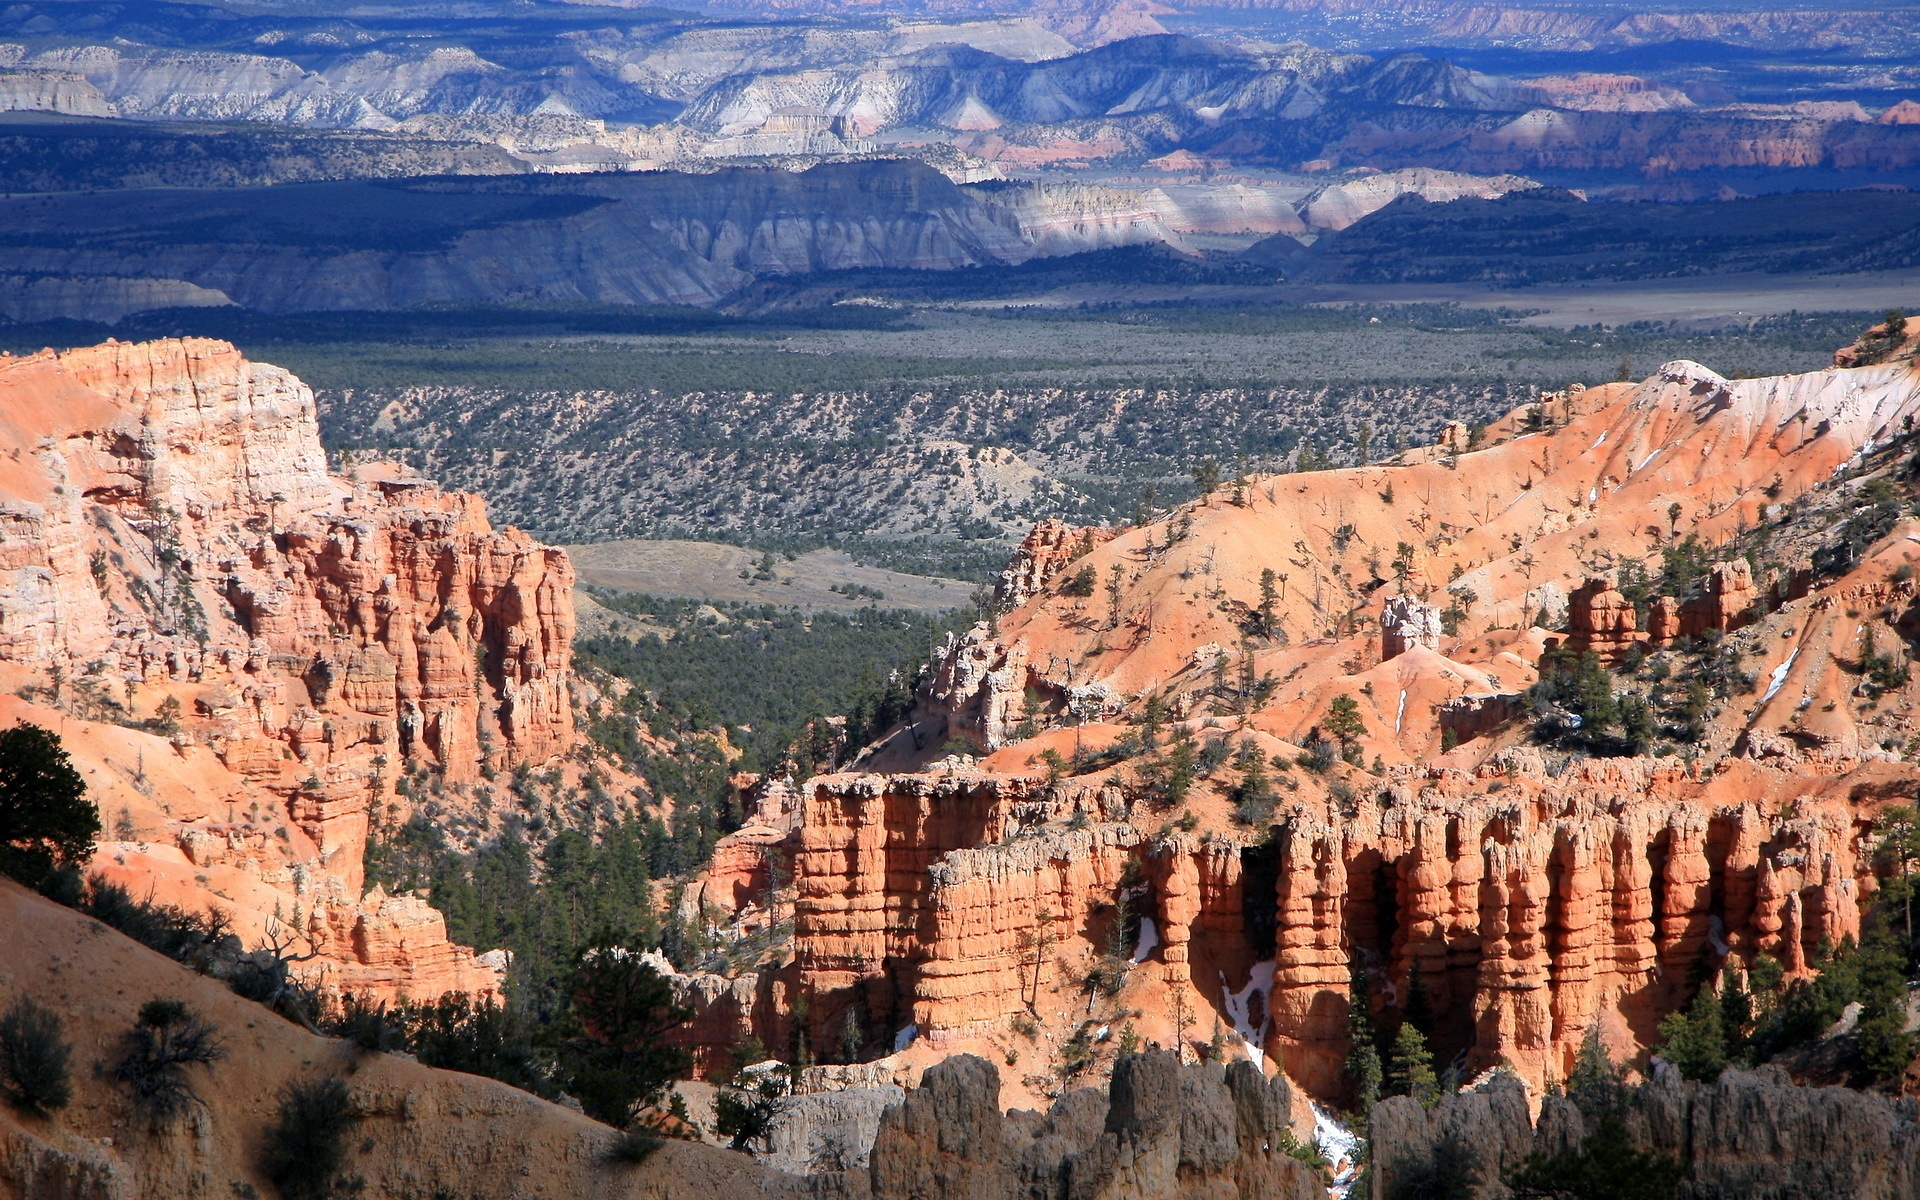 Colorado Canyon View for 1920 x 1200 widescreen resolution